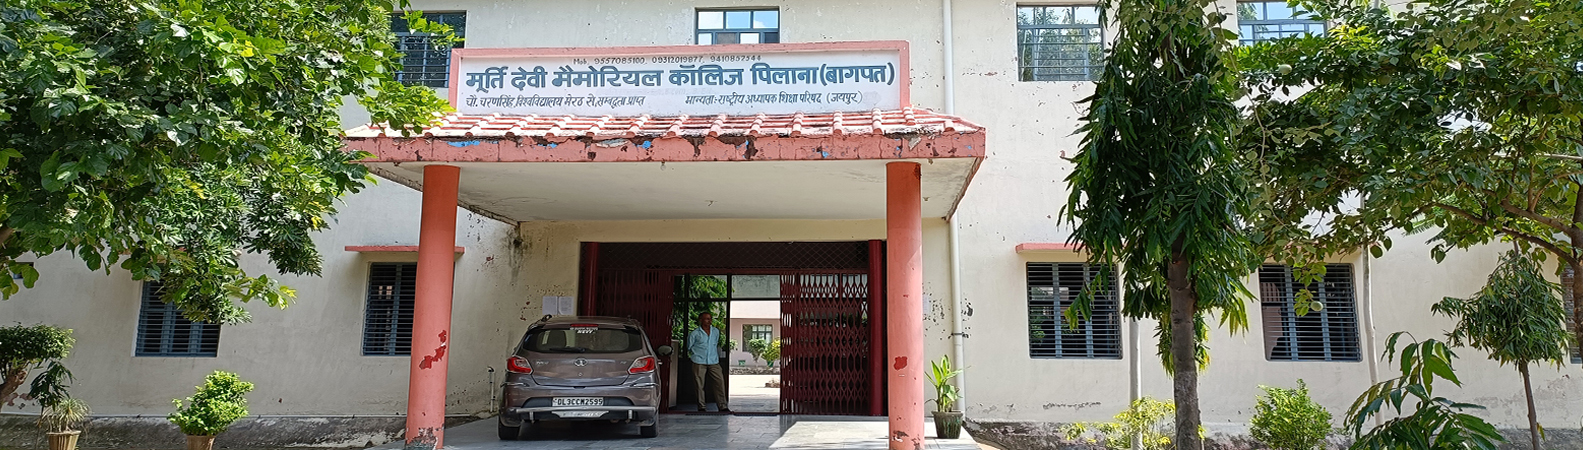 Murti Devi Memorial College, Baghpat Image